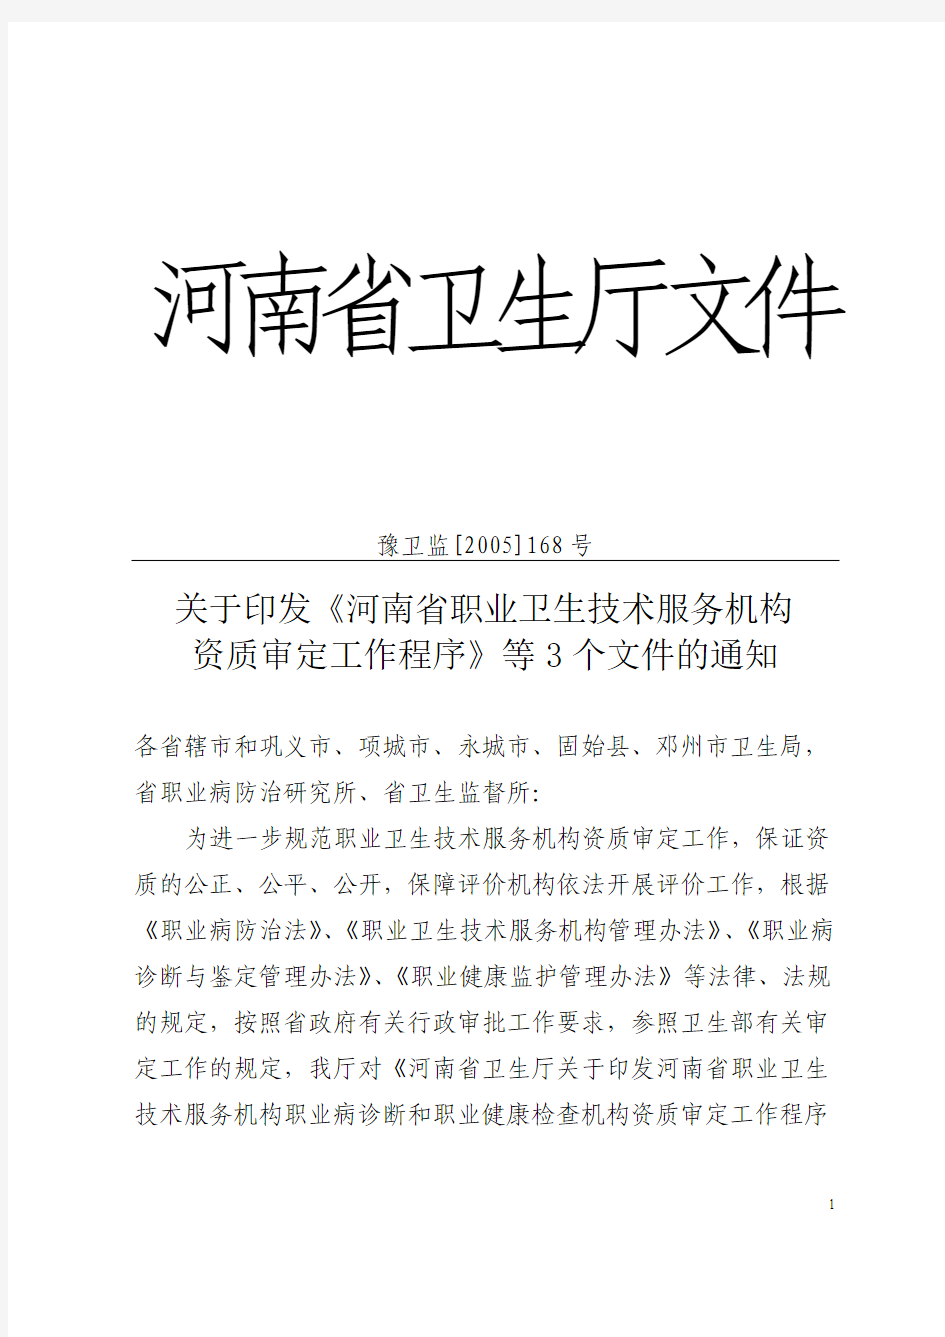 《河南省职业卫生技术服务机构资质审定工作程序》等3个文件